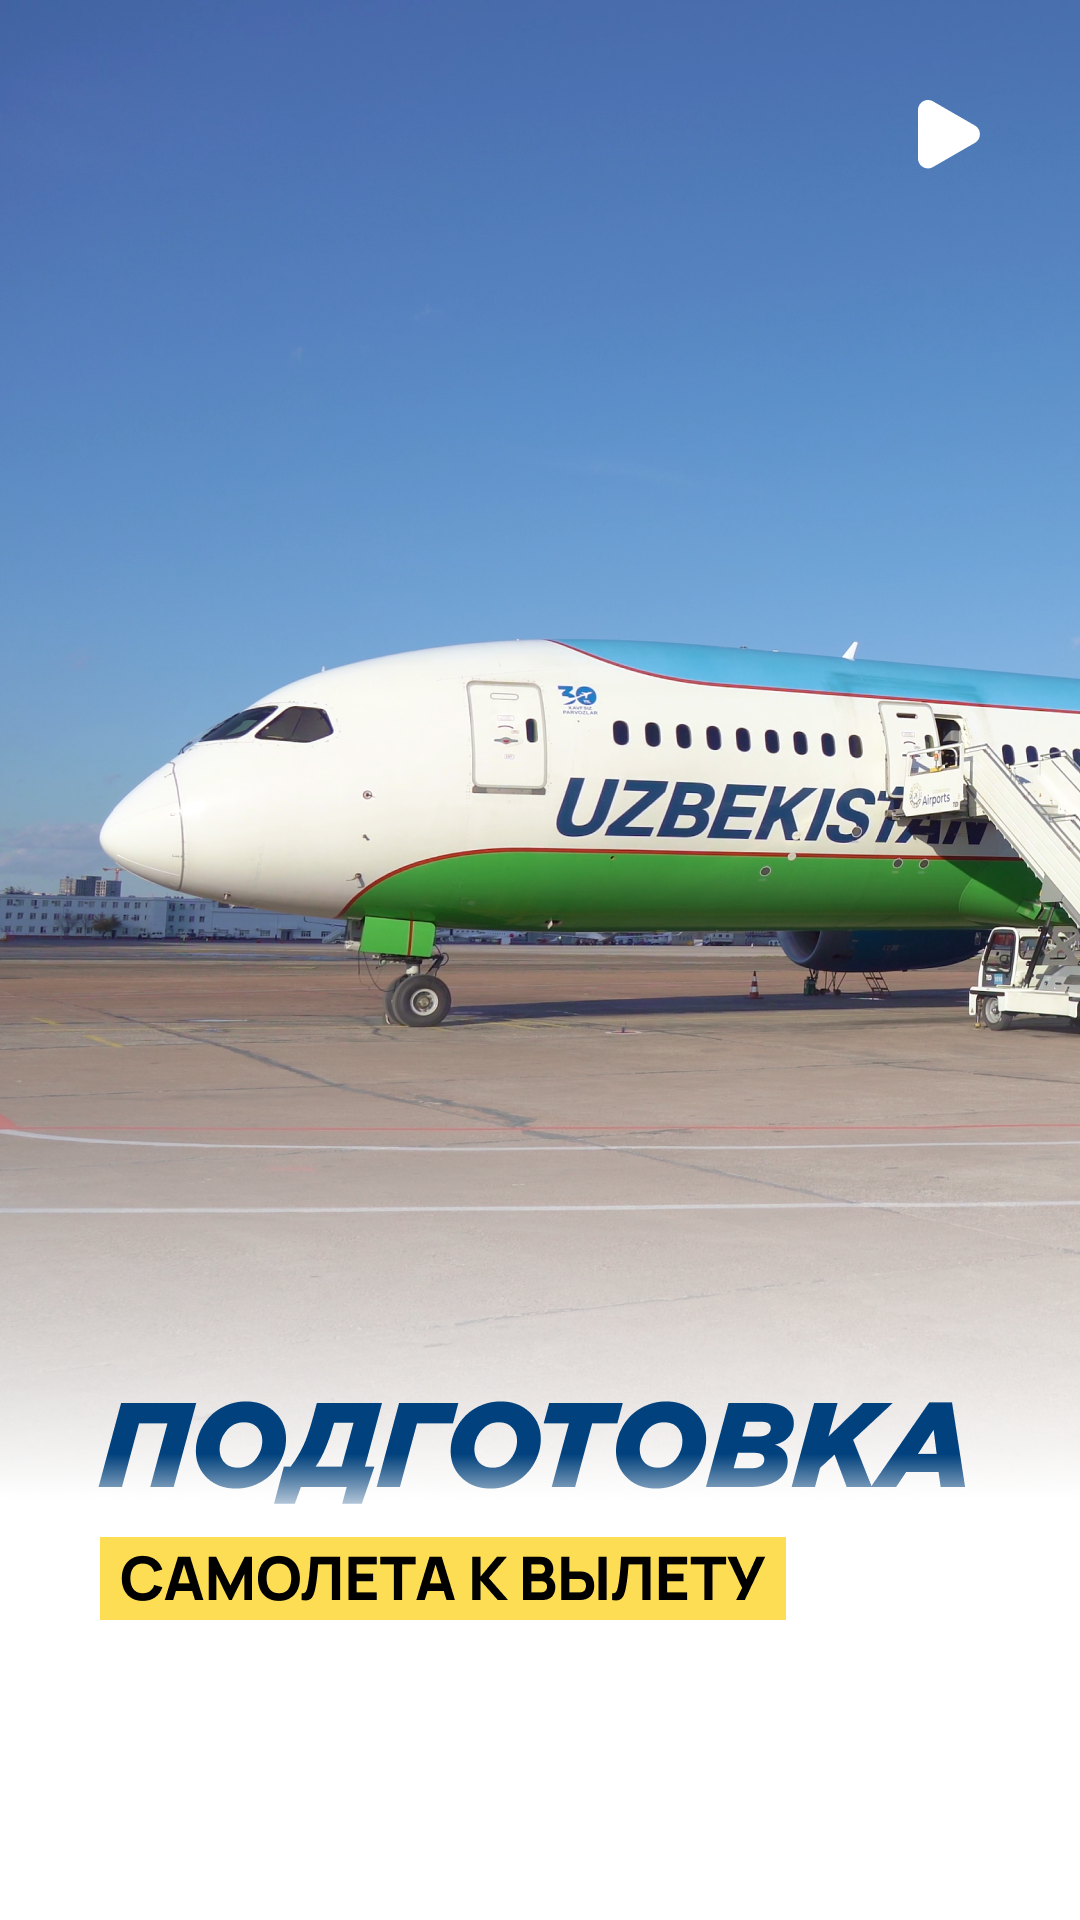 Попасть на летное поле – это всегда большая ответственность, которую команда Repost TV разделила при содействии Uzbekistan Airways 